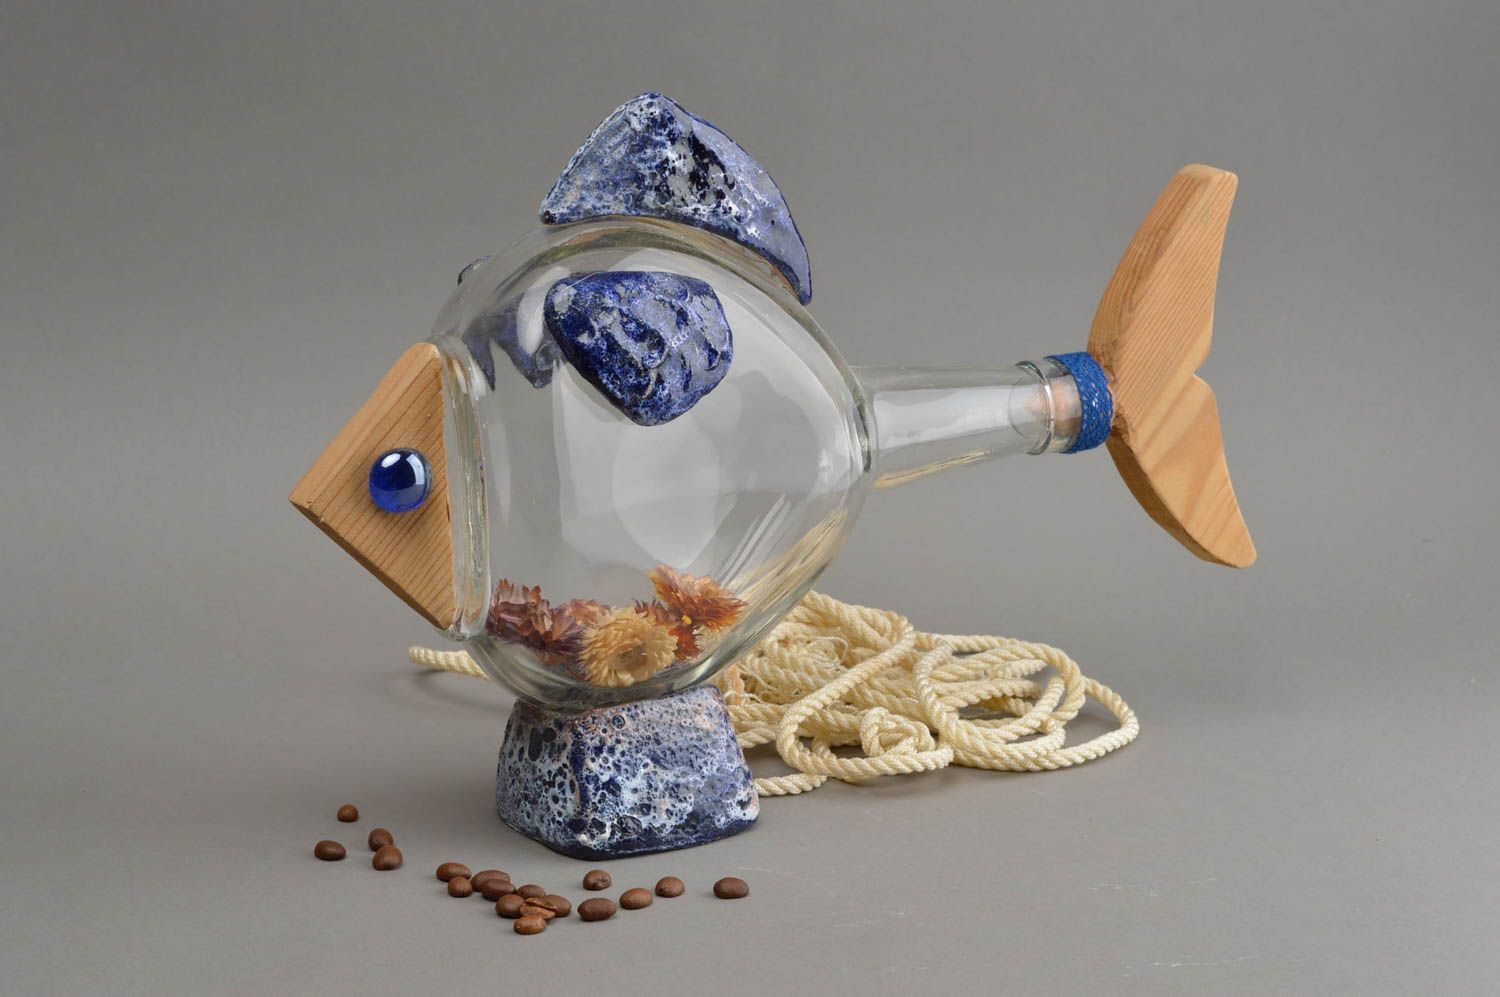 Статуэтка рыбы птицы на основе стеклянной бутылки ручной работы авторский декор фото 1